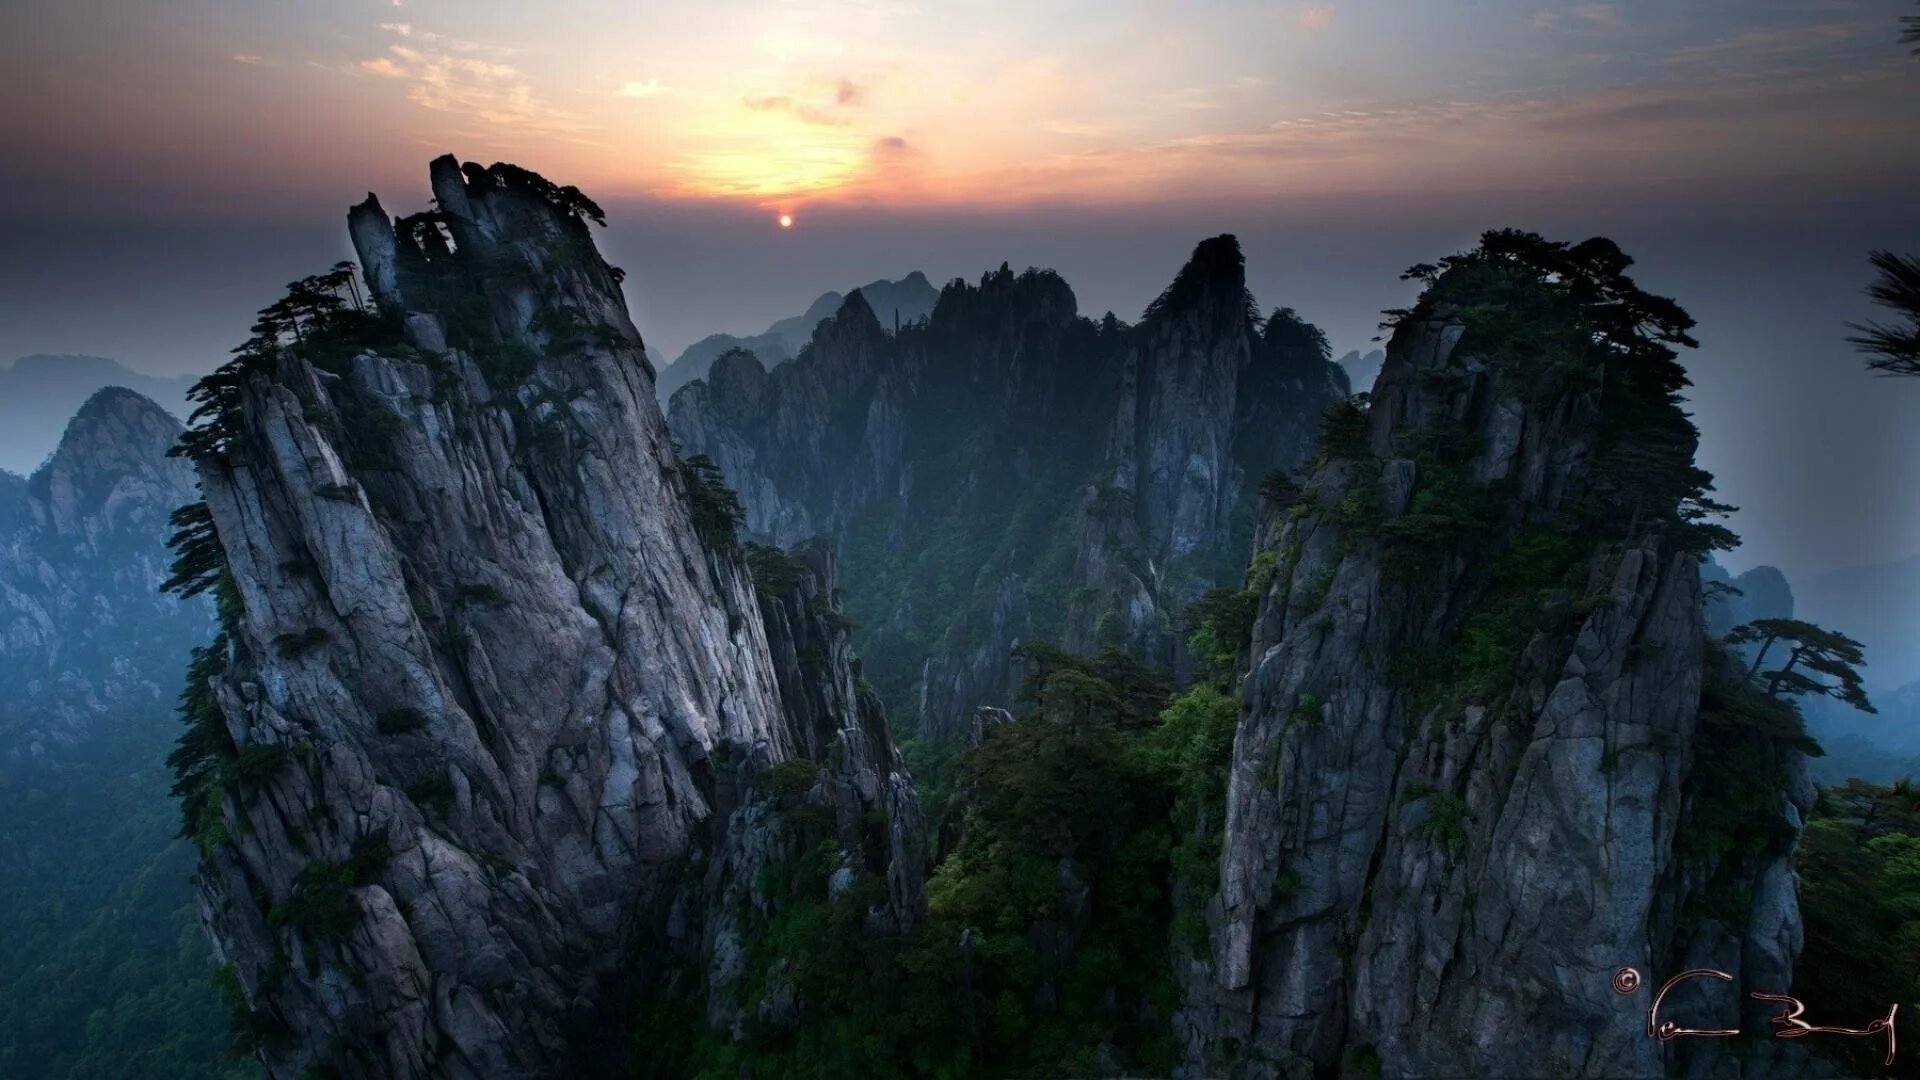 Горы Хуаншань, Китай. Горы Хуаншань Китай фон Яндекса. Лестница горы Хуаншань. Горы Хуаншань закат. Возрождение хуаншань